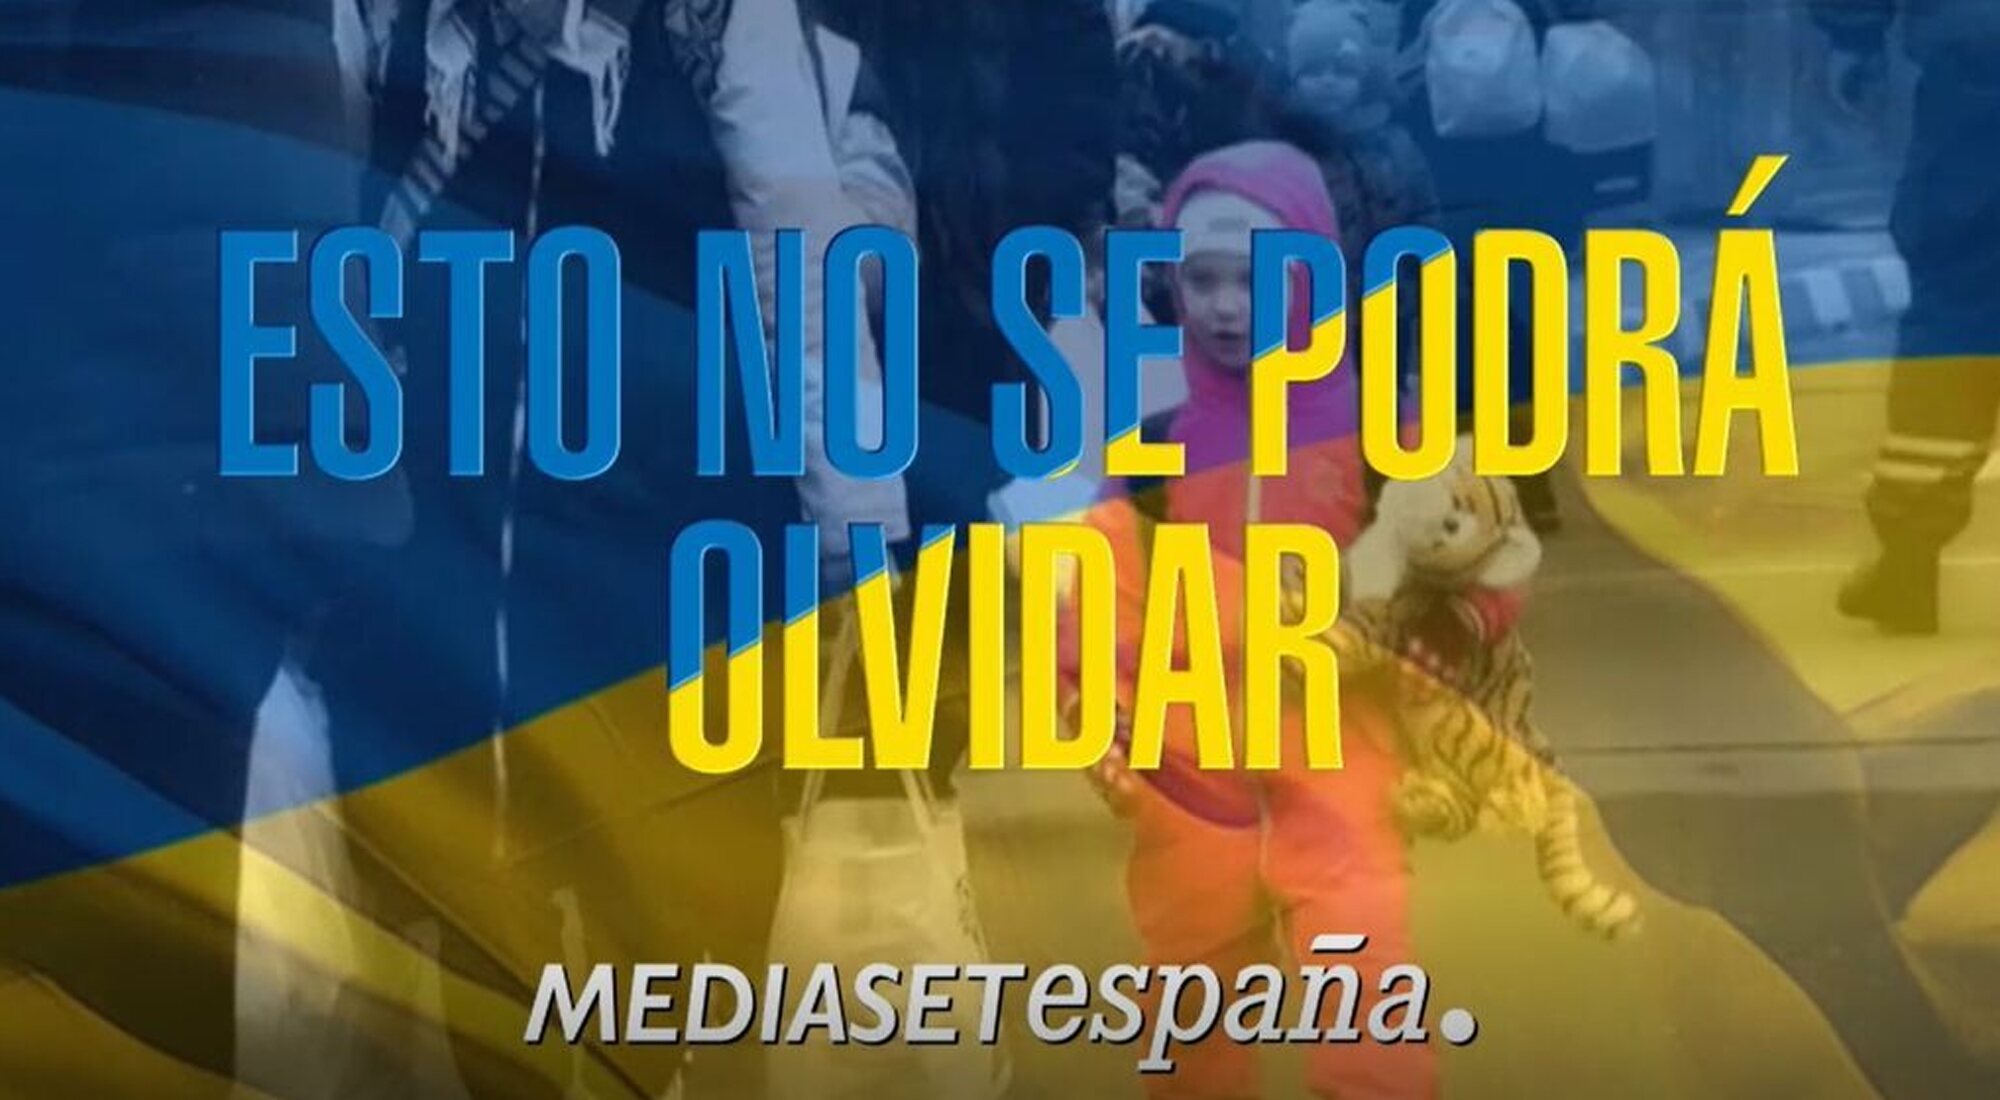 Lema de la campaña de Mediaset en apoyo a Ucrania que da nombre al nuevo formato de Telecinco